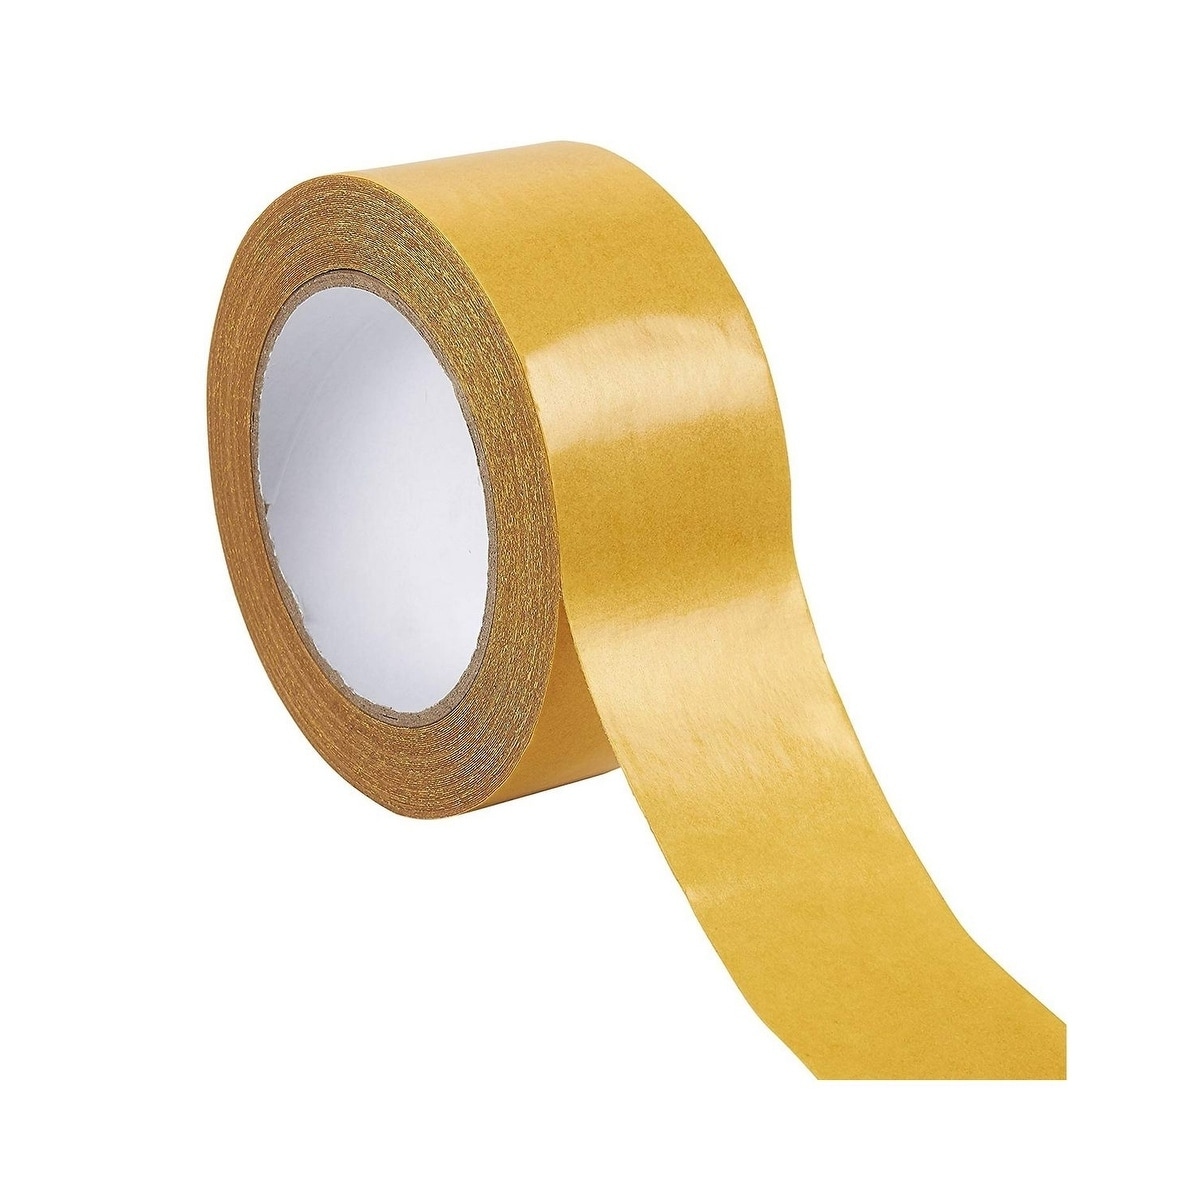 Double Sided Tape For Carpet Rug Slip Resistant Tape Carpet Upholstery Tape